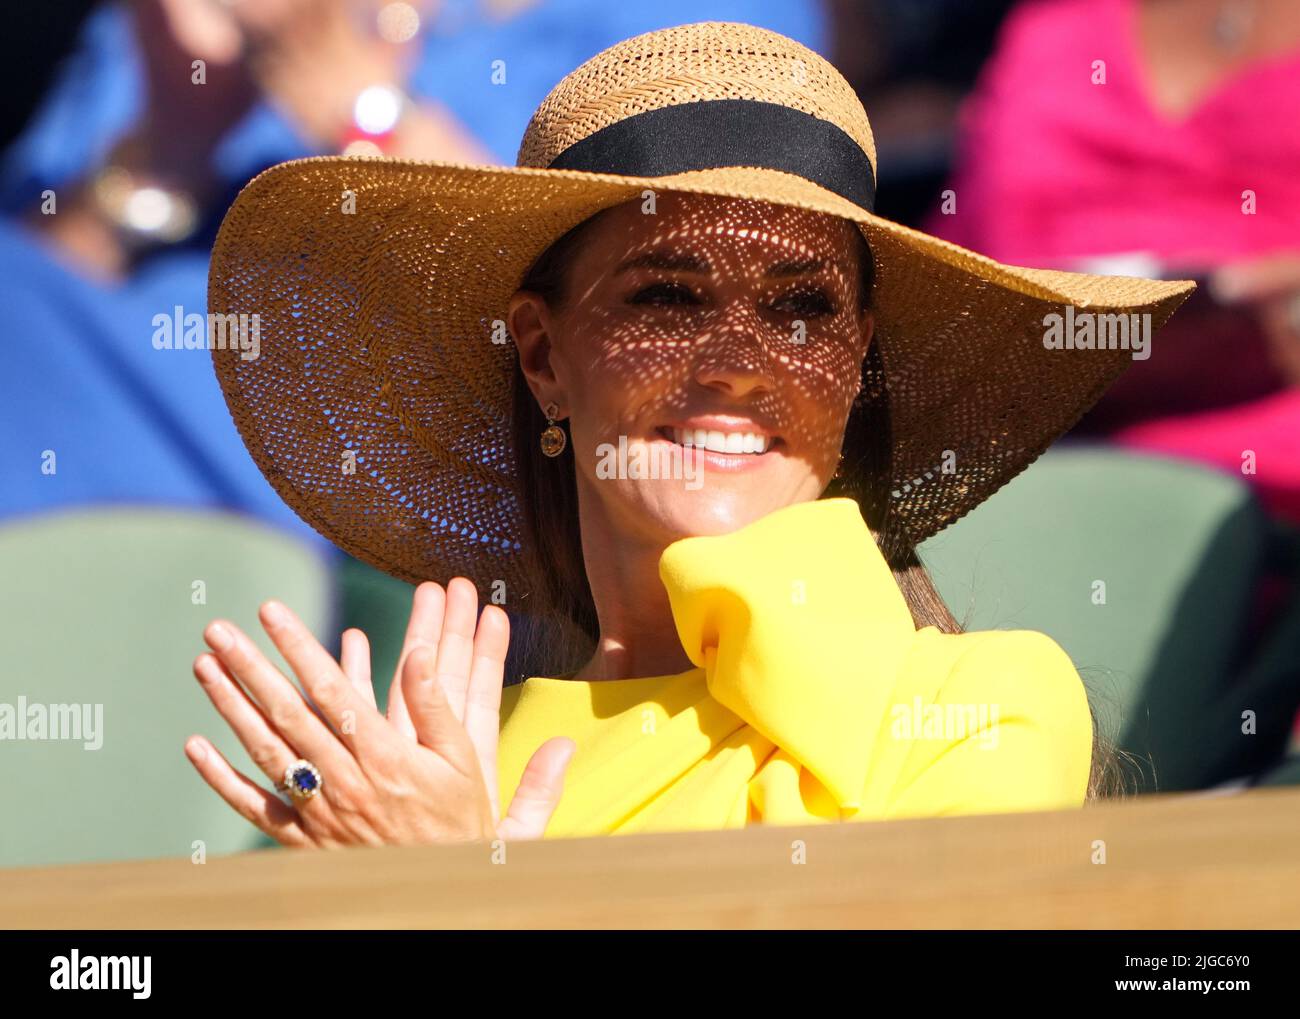 La duchessa di Cambridge nella Royal Box il giorno tredici dei campionati di Wimbledon 2022 all'All England Lawn Tennis and Croquet Club, Wimbledon. Data foto: Sabato 9 luglio 2022. Foto Stock